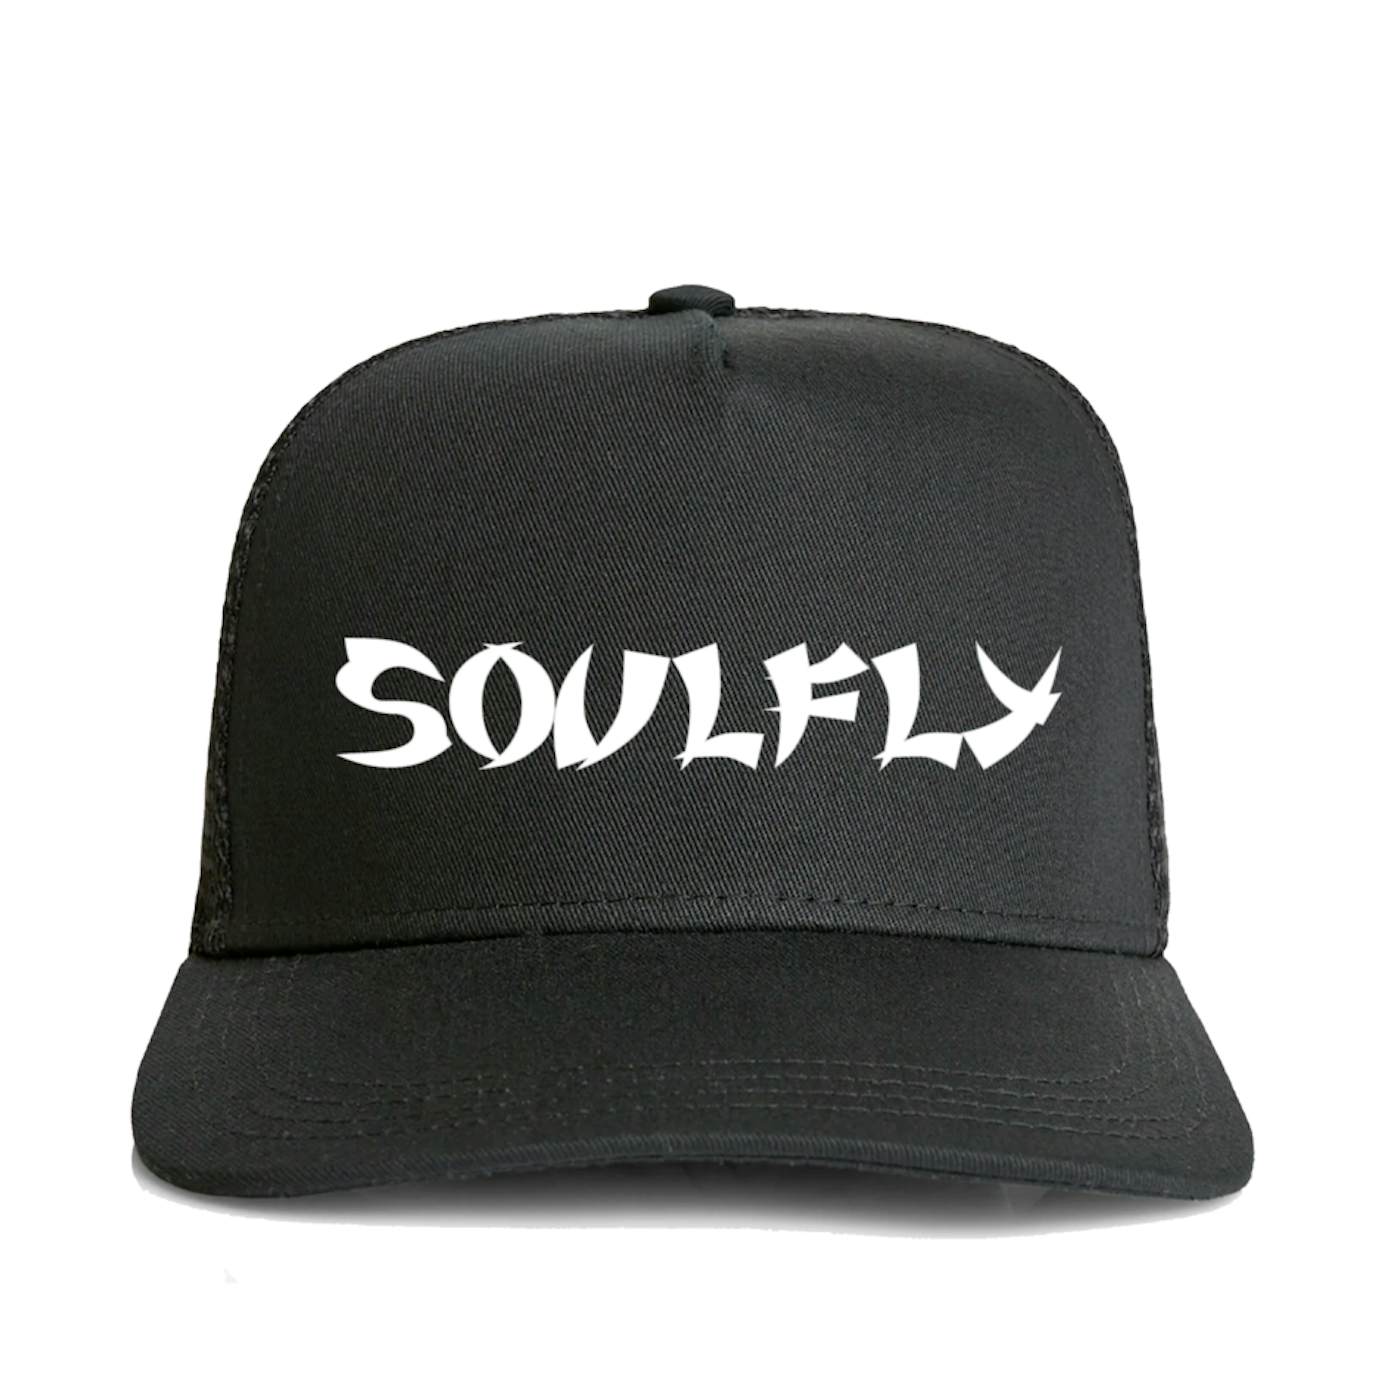 Soulfly "Logo" Trucker Hat